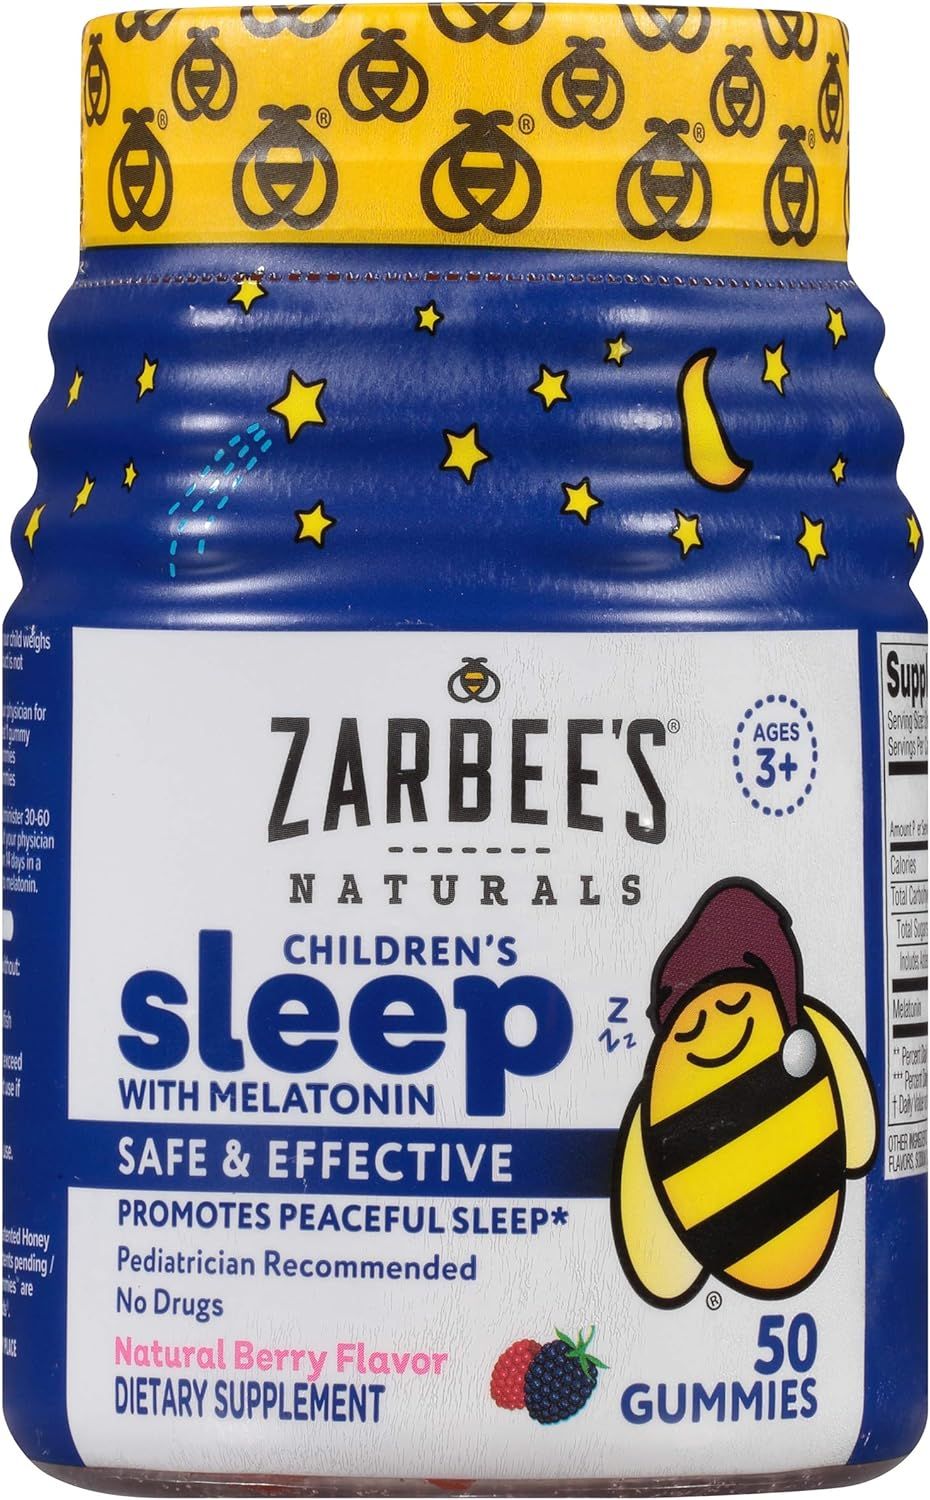 Zarbee's Naturals Children's Sleep with Melatonin Supplement, Natural Berry Flavored, 50 Gummies | Amazon (US)